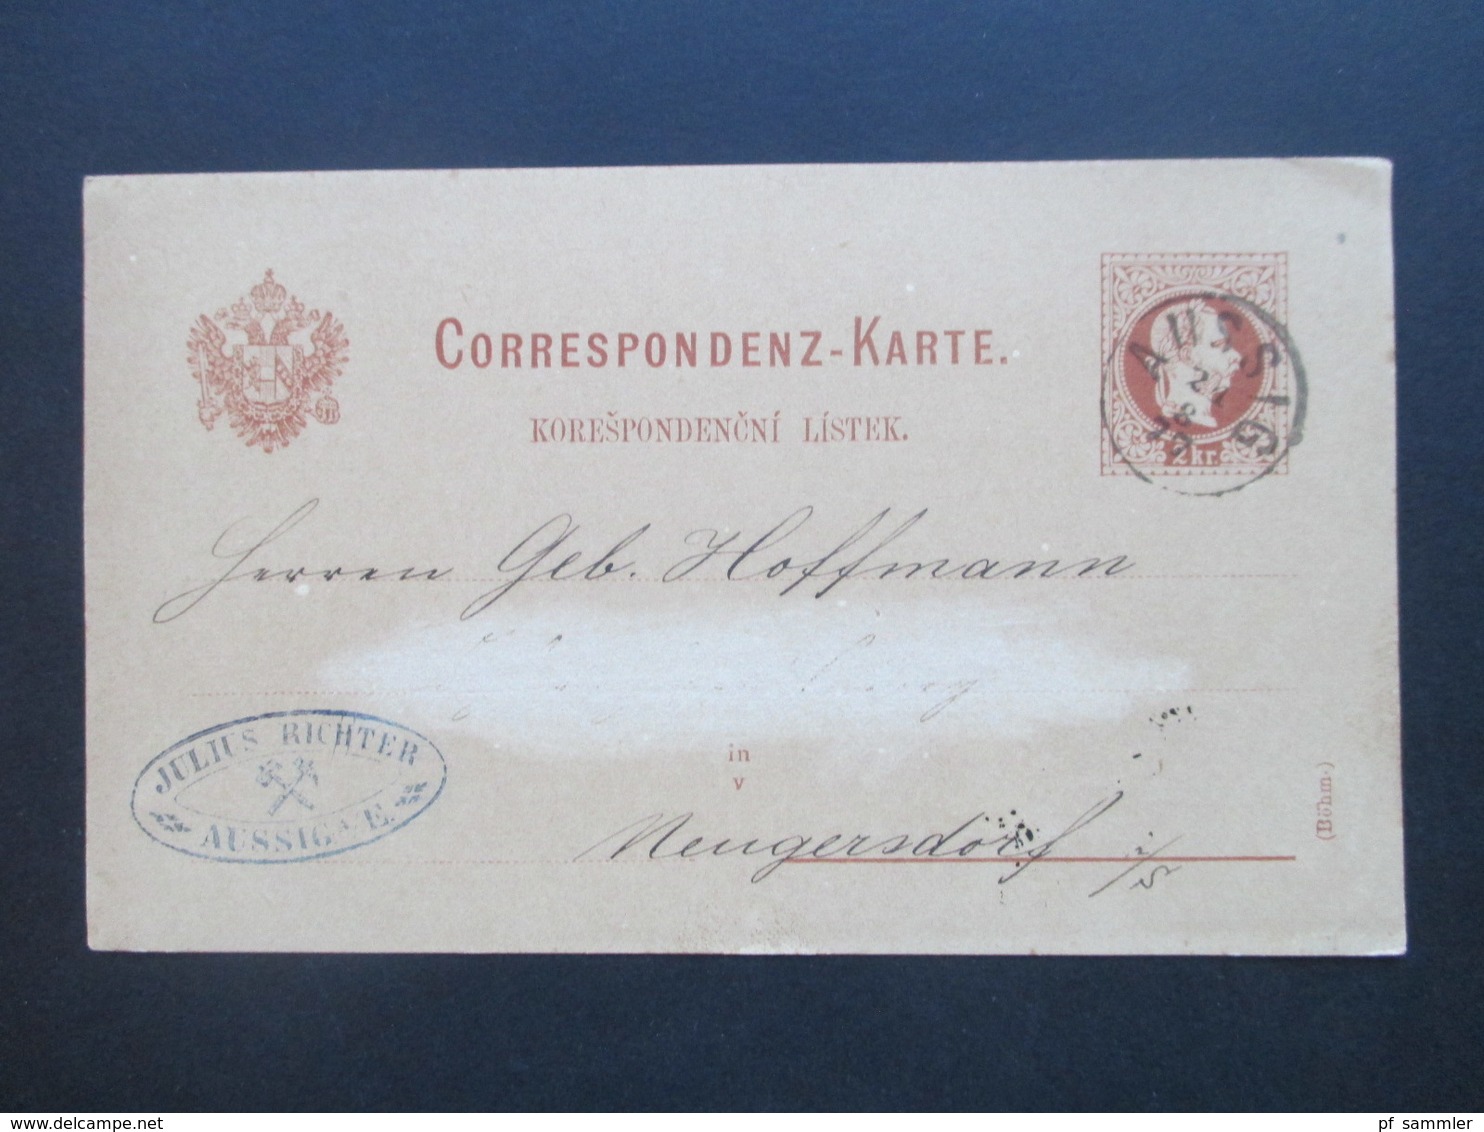 Österreich Ganzsachen Posten ab 1876 - 1920er Jahre + 5 neuere! Insgesamt 48 Karten interessante Stempel??